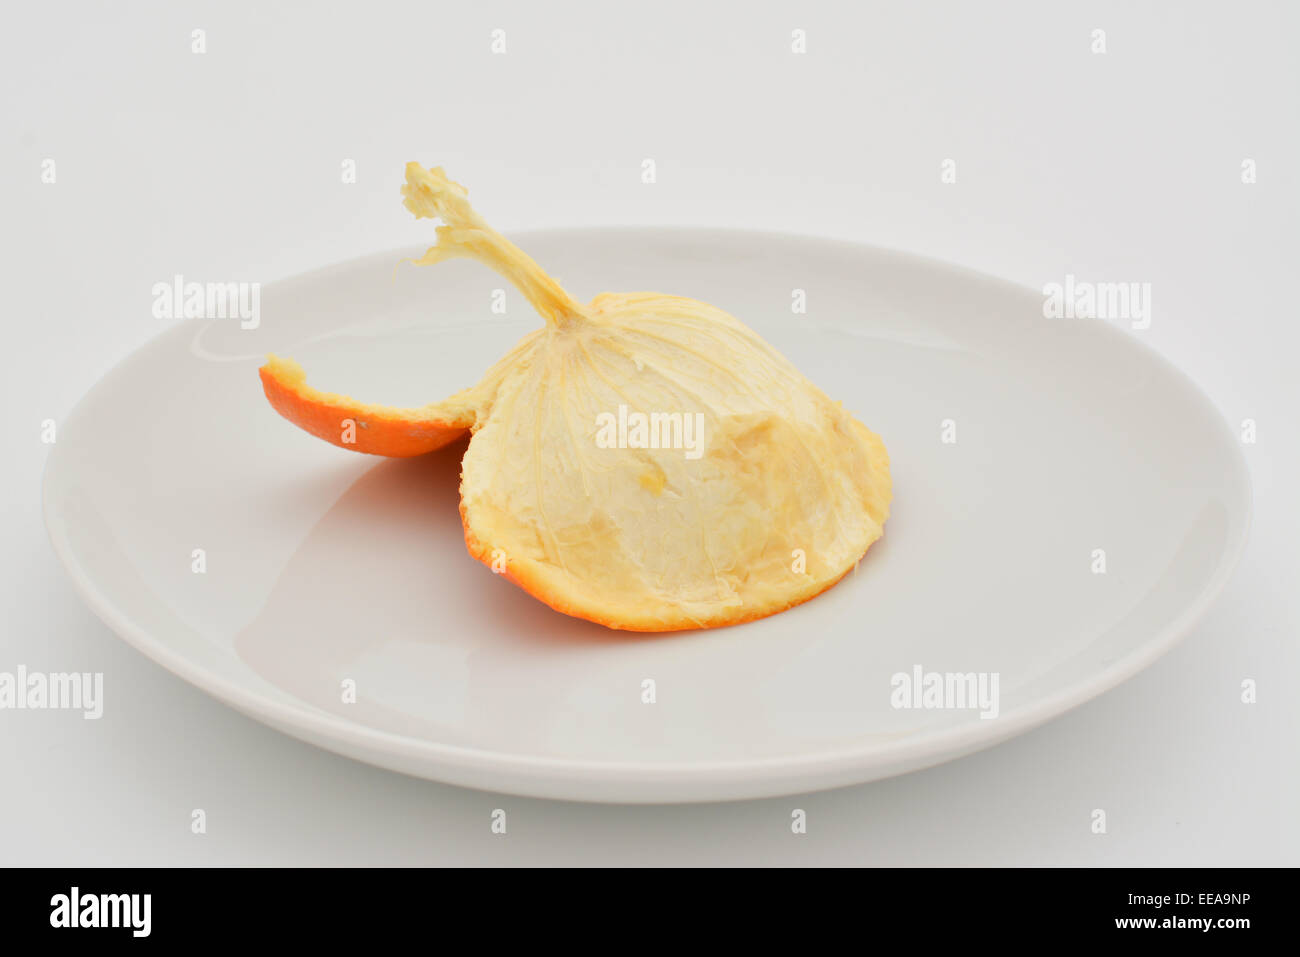 All'interno della pelle di un mangiato arancione su una piastra bianca Foto Stock